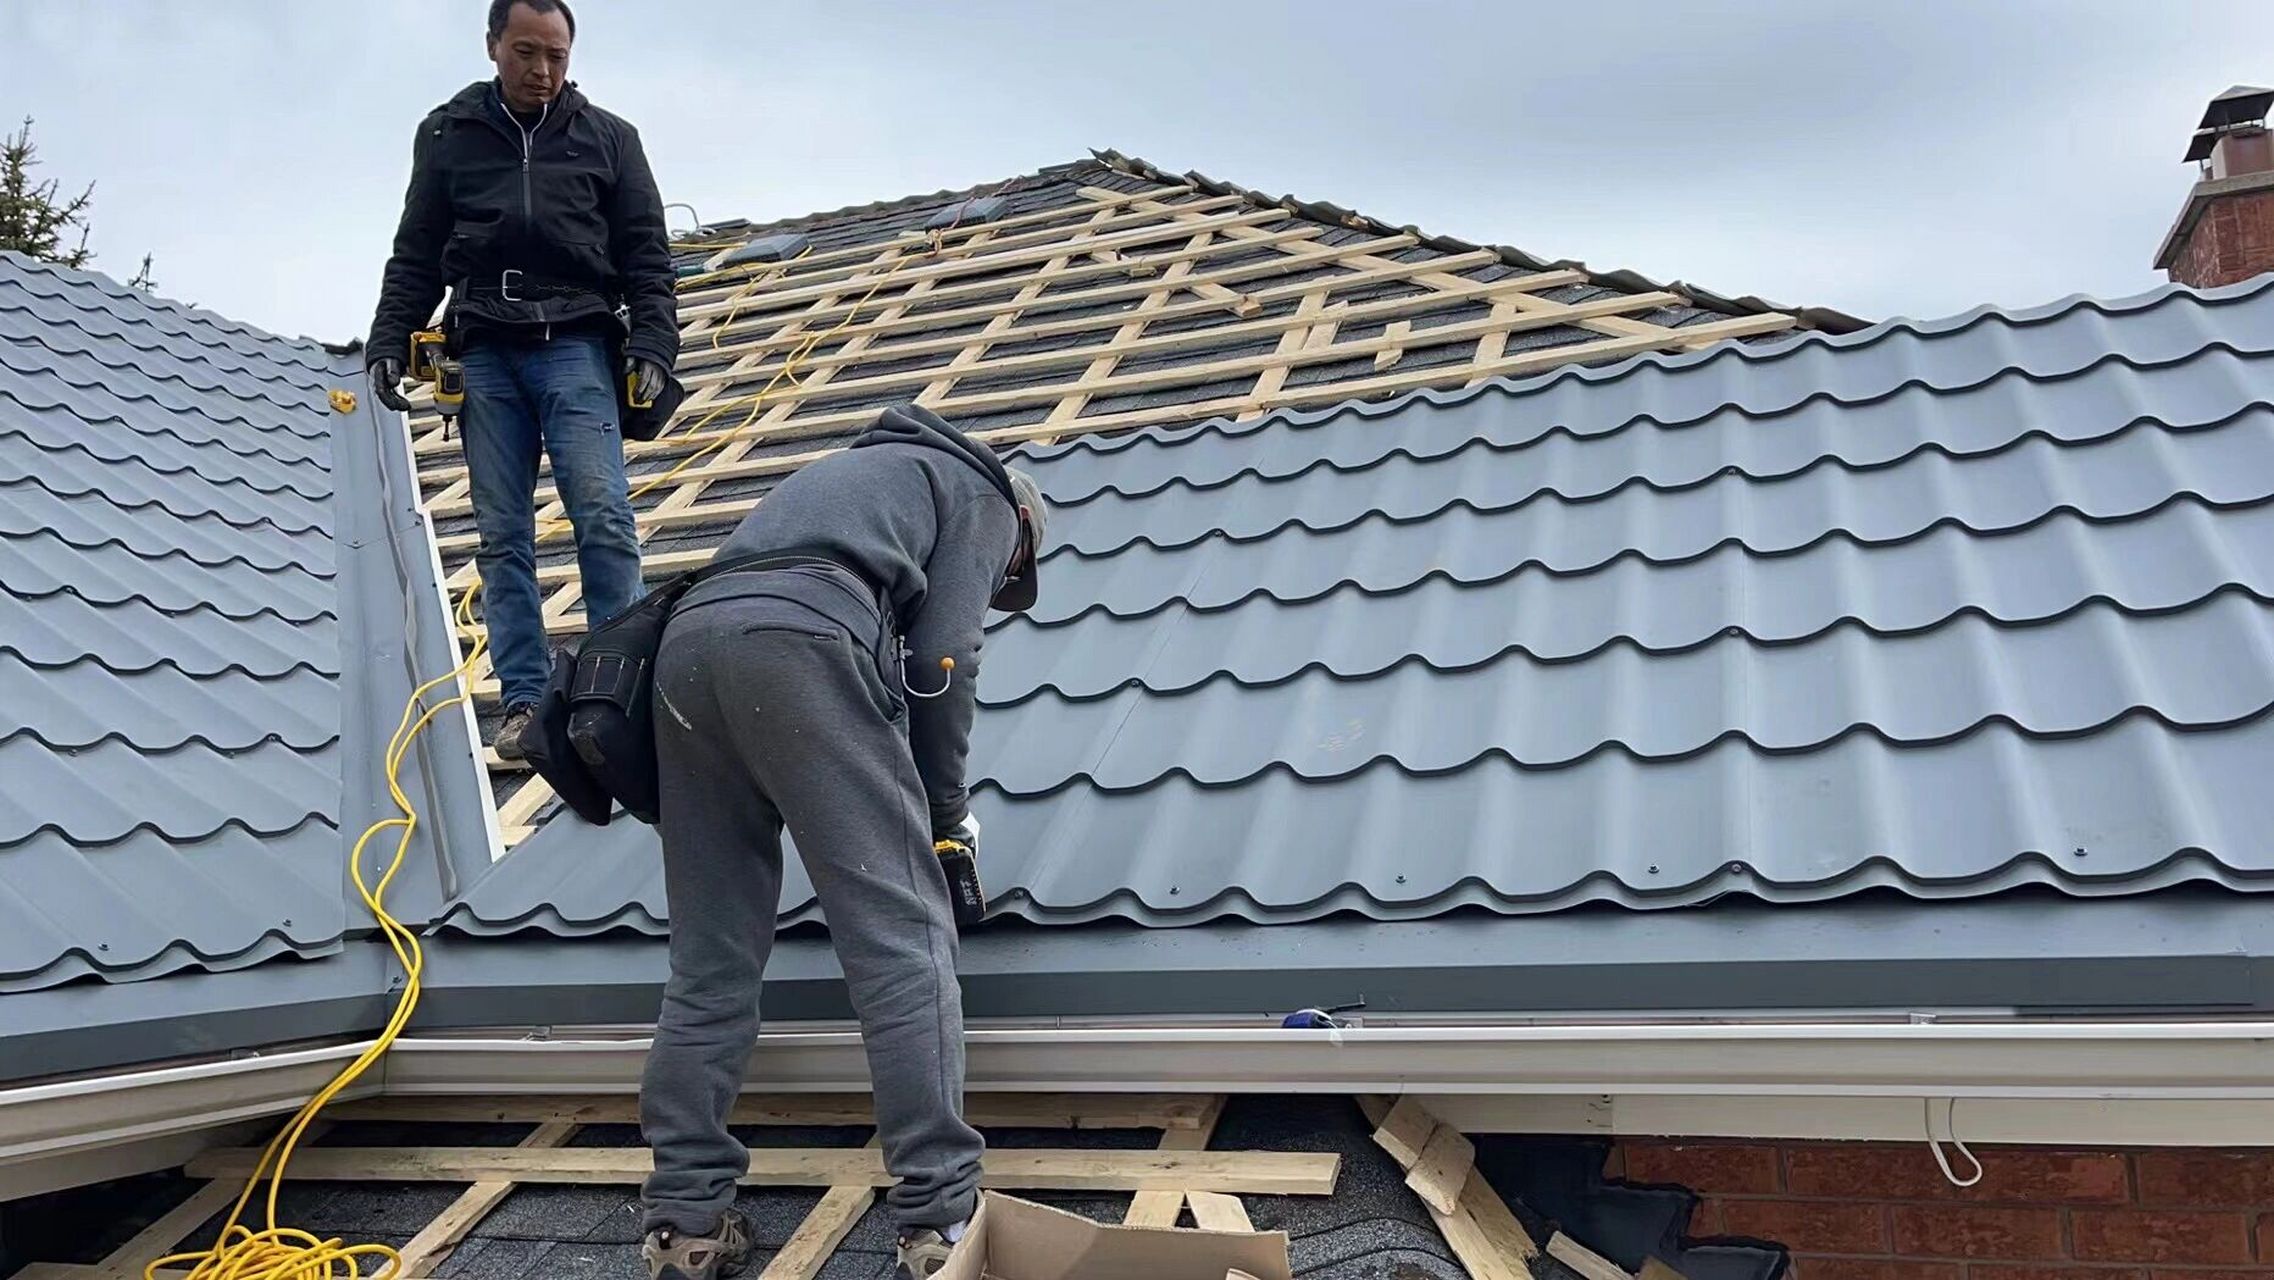 时尚的彩钢瓦屋顶 分享一个去年我们做的其中一个彩钢瓦屋顶工程,俗称